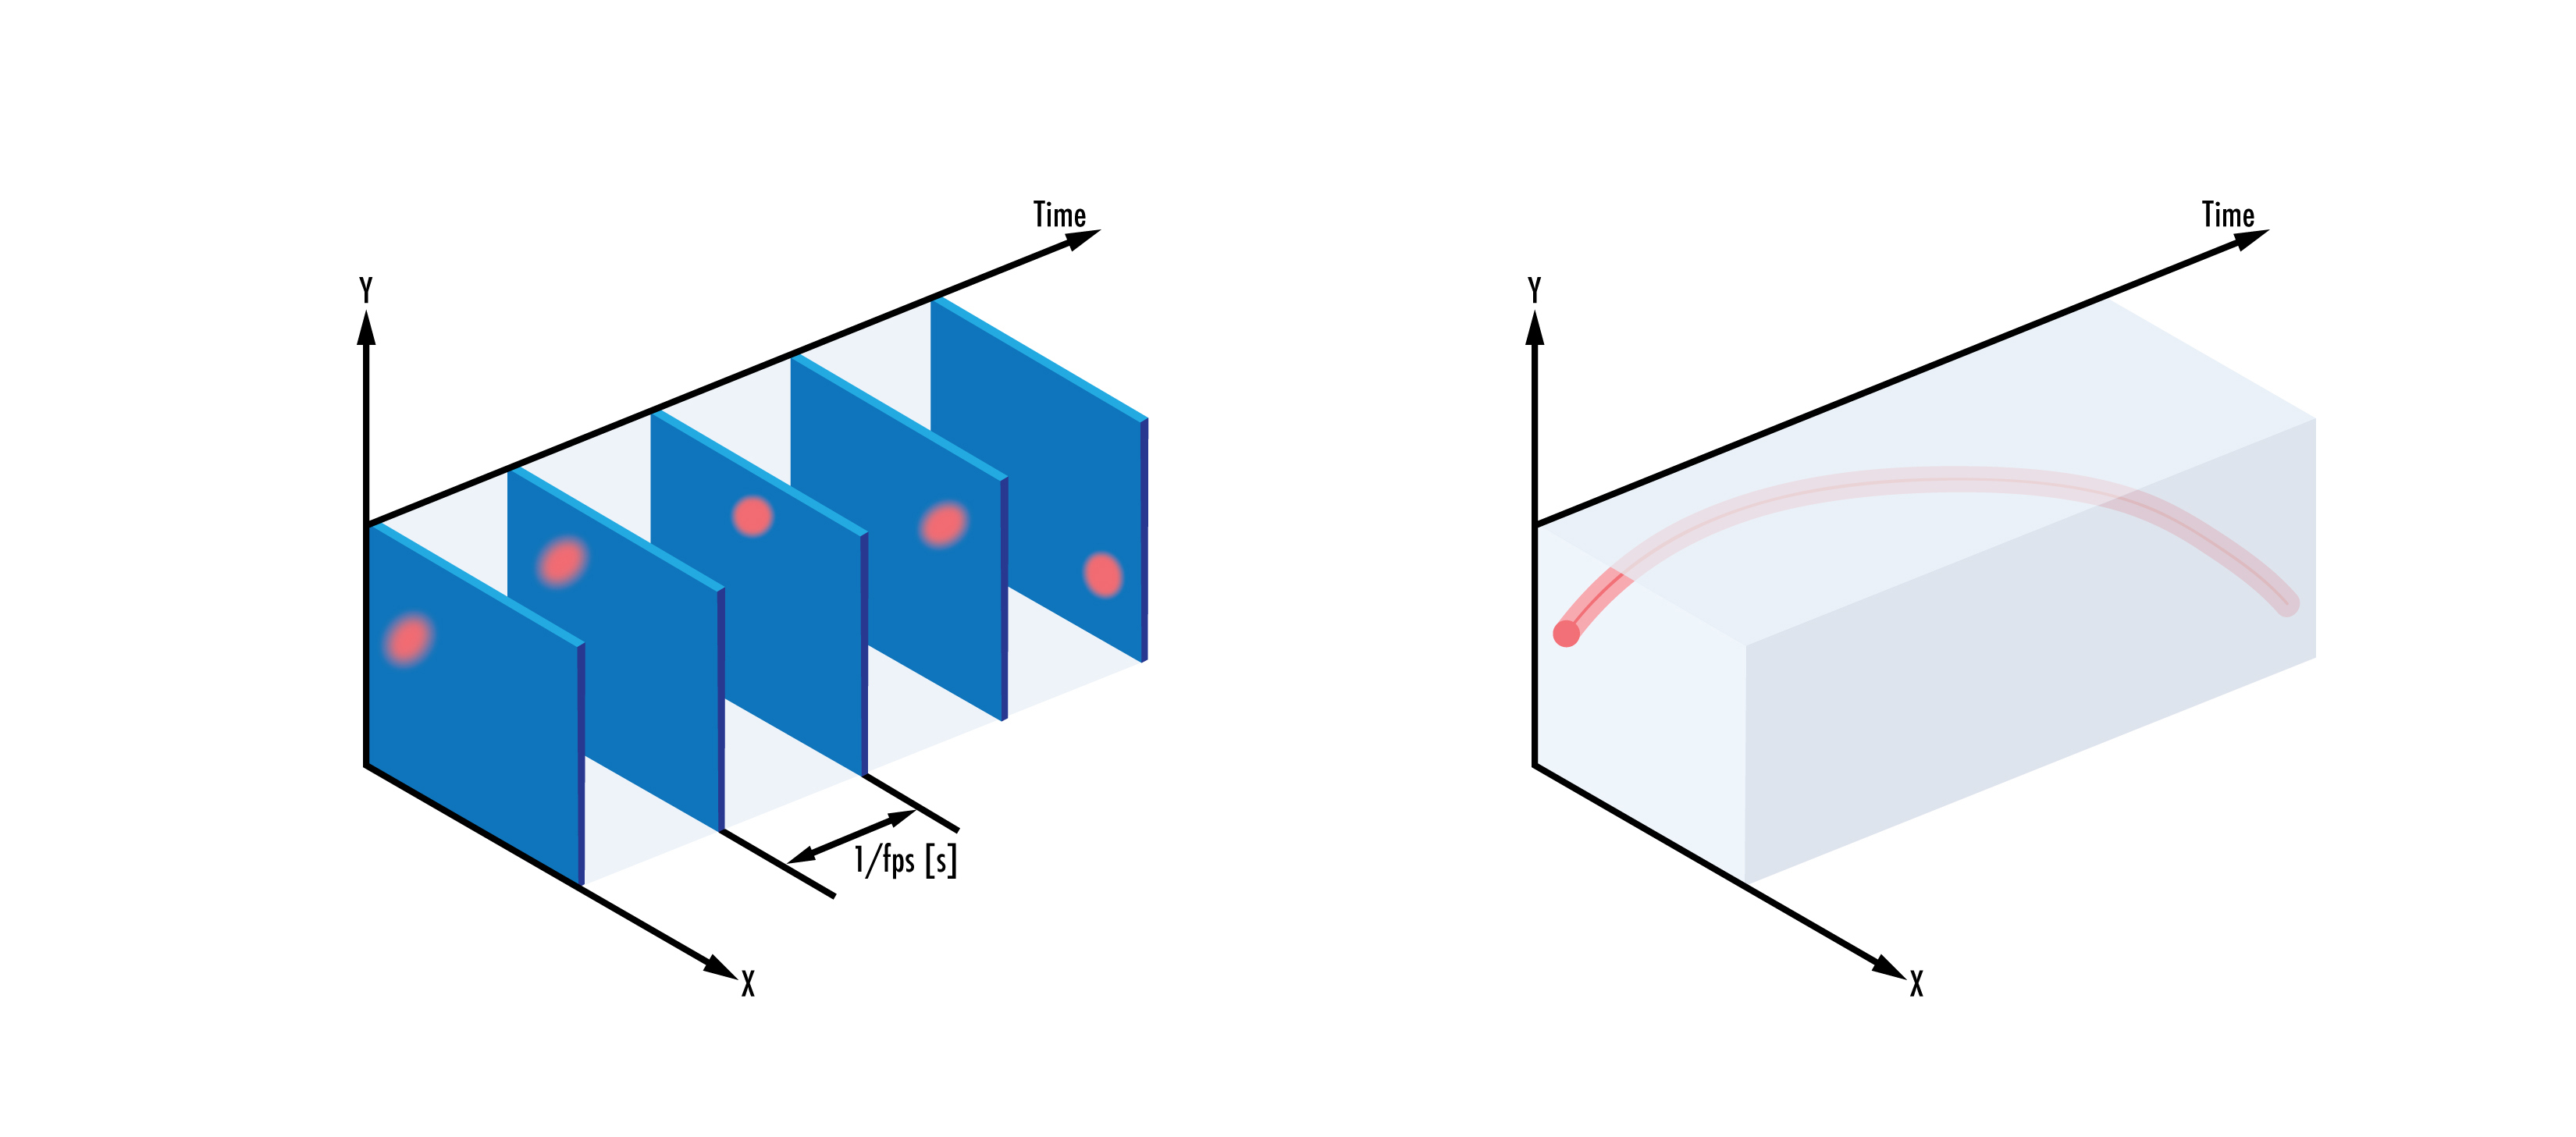 従来のセンサー (左) は、視野内の対象物の変化とは無関係に、定率でフレームを記録するのに対し、イベントベースのセンサー (右) は、視野の強度の変化の検出に応じて、個々のピクセルの変化を捕捉する。